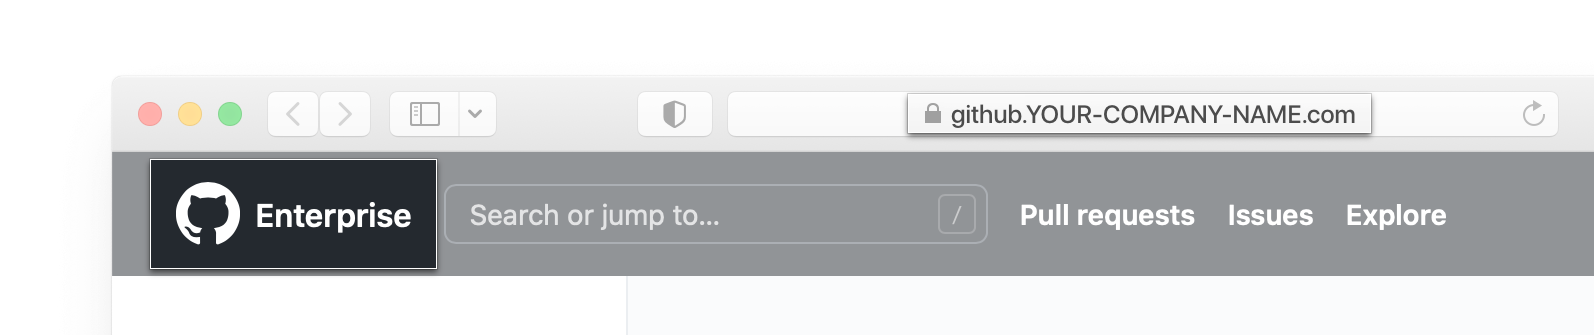 Captura de pantalla de la barra de dirección y el encabezado de GitHub Enterprise Server en un buscador